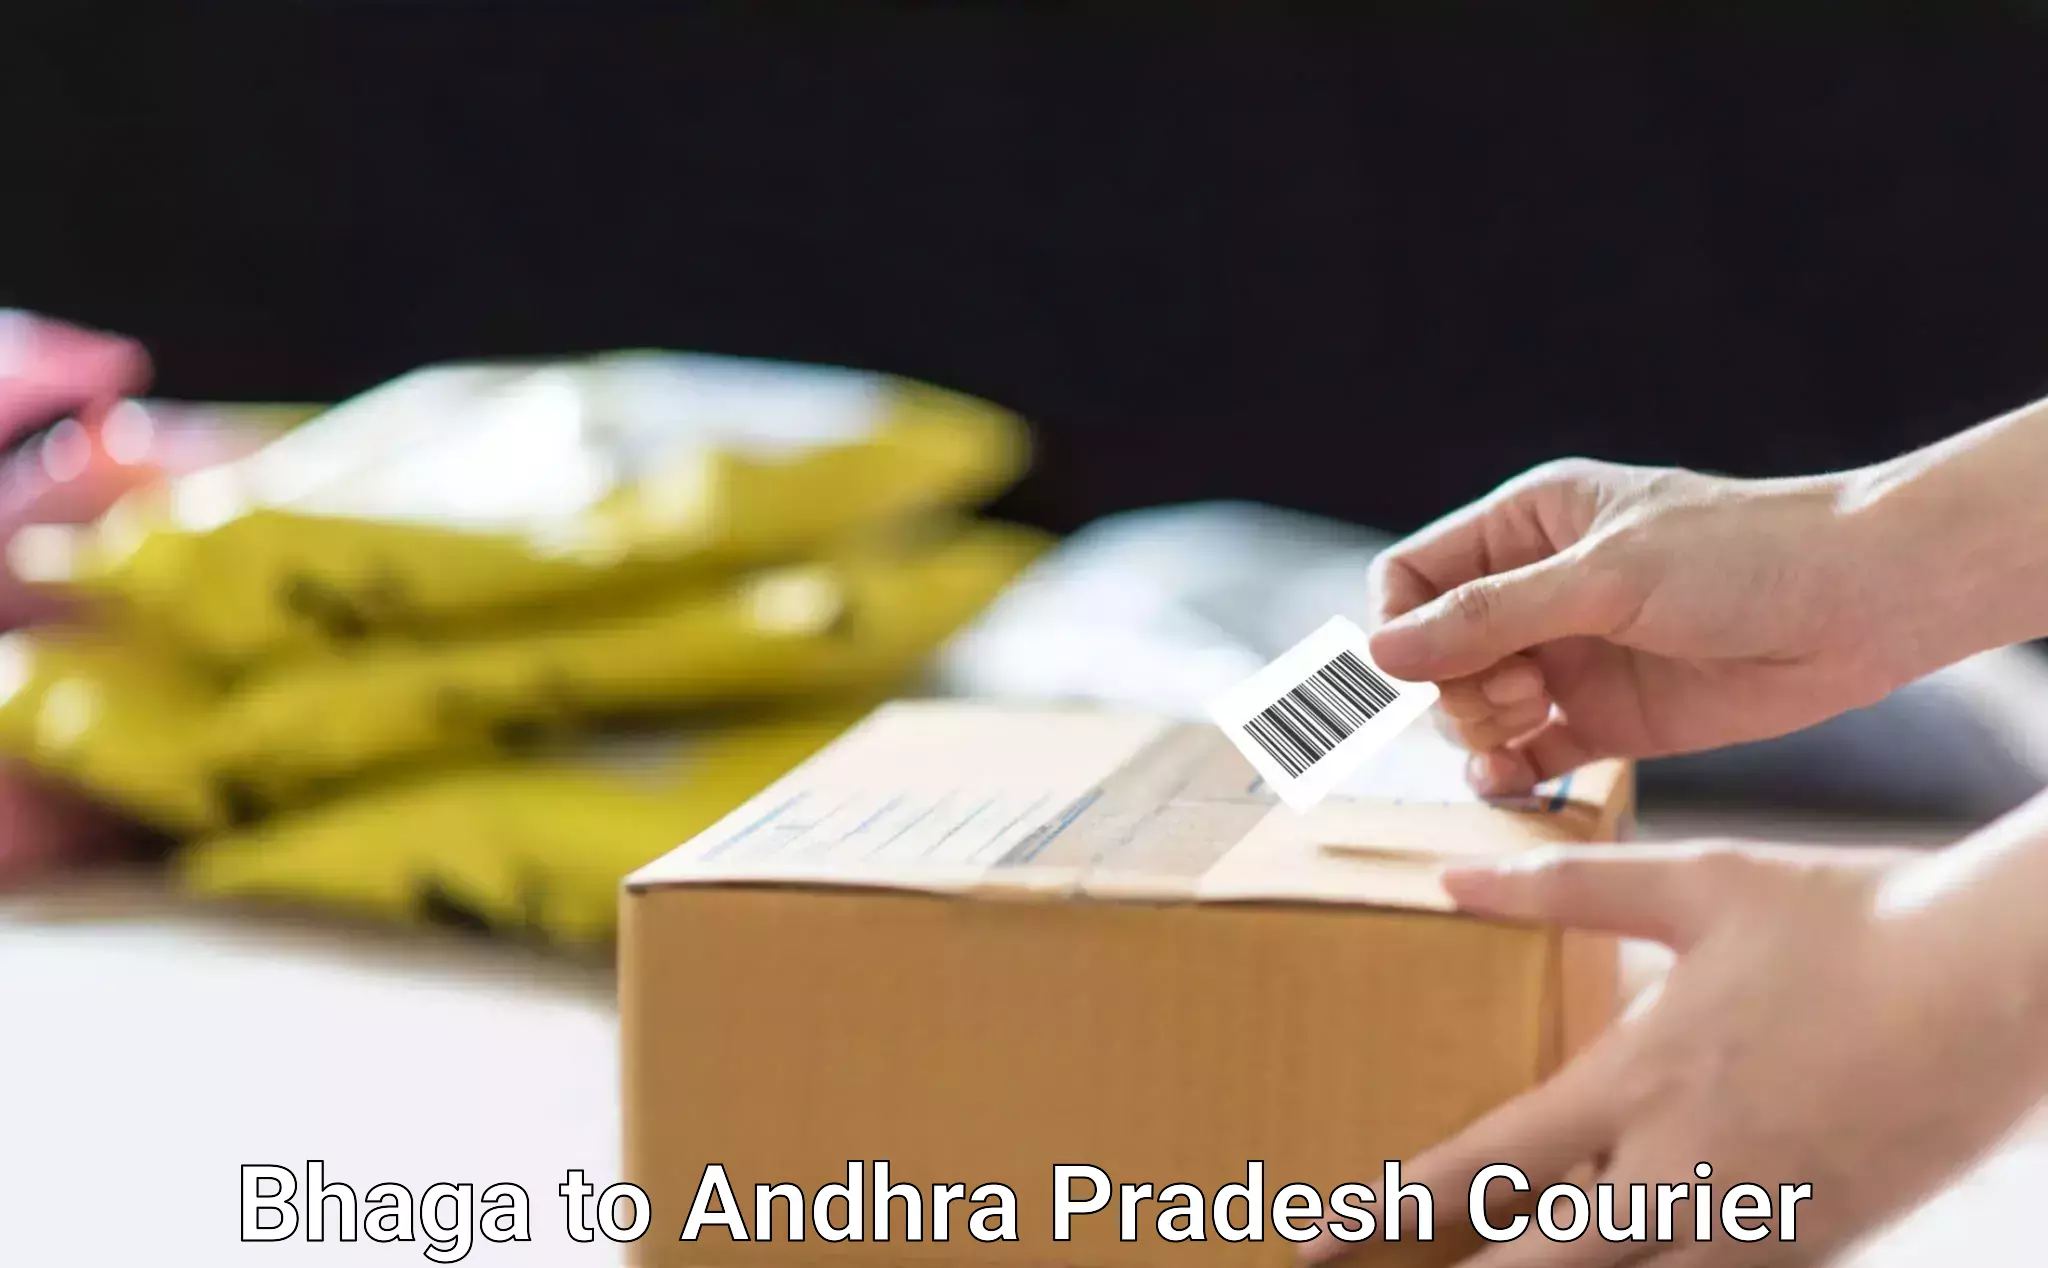 Efficient logistics management in Bhaga to Andhra Pradesh